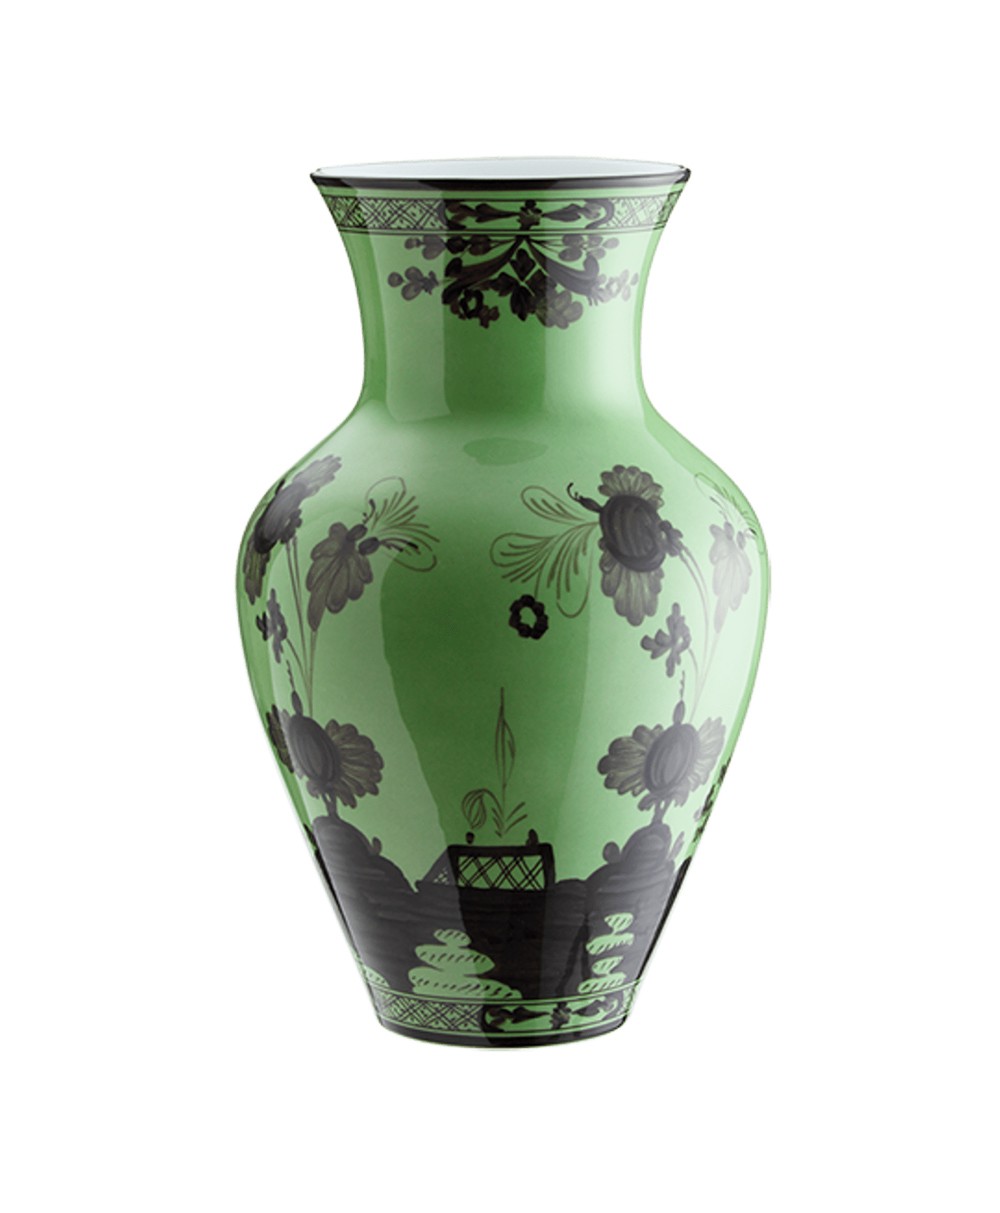 Hier sehen Sie: Oriente Italiano Ming Vase von Ginori 1735